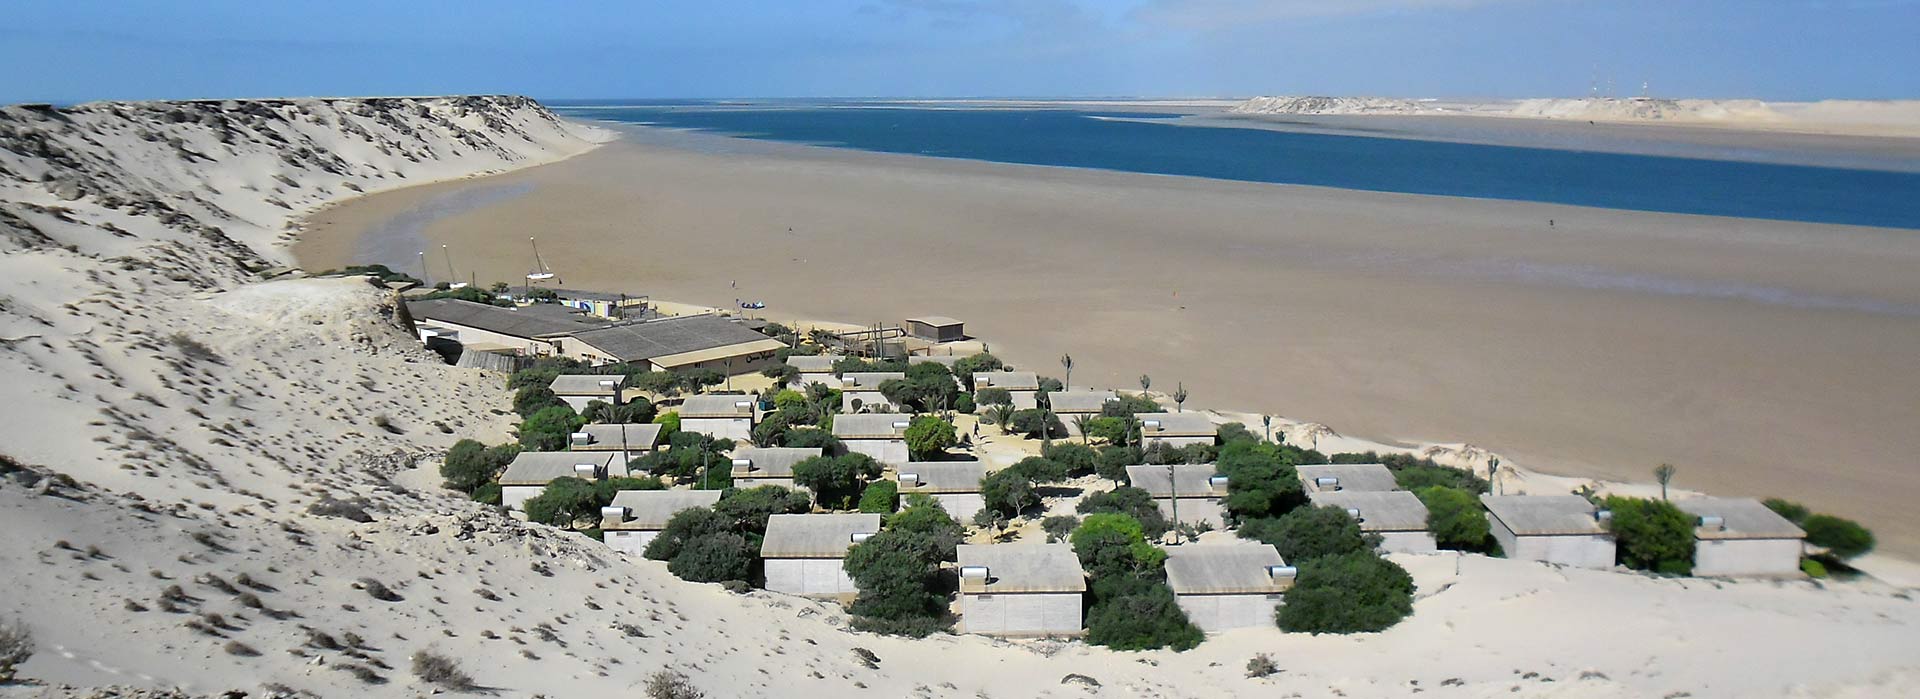 84 établissements d’hébergement touristique labélisés Clef Verte  au Maroc en 2017